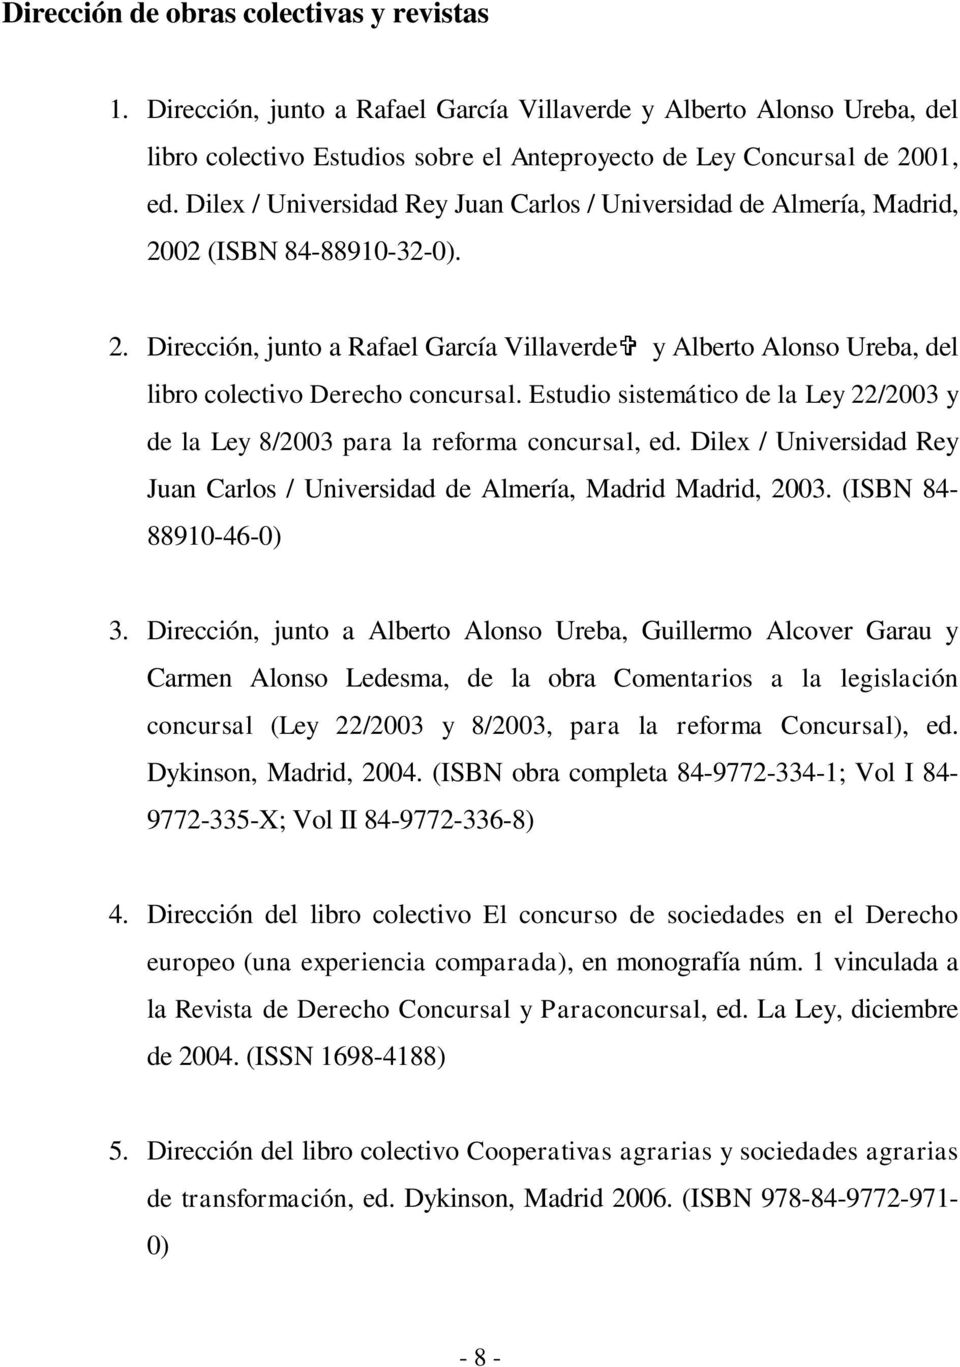 Estudio sistemático de la Ley 22/2003 y de la Ley 8/2003 para la reforma concursal, ed. Dilex / Universidad Rey Juan Carlos / Universidad de Almería, Madrid Madrid, 2003. (ISBN 84-88910-46-0) 3.